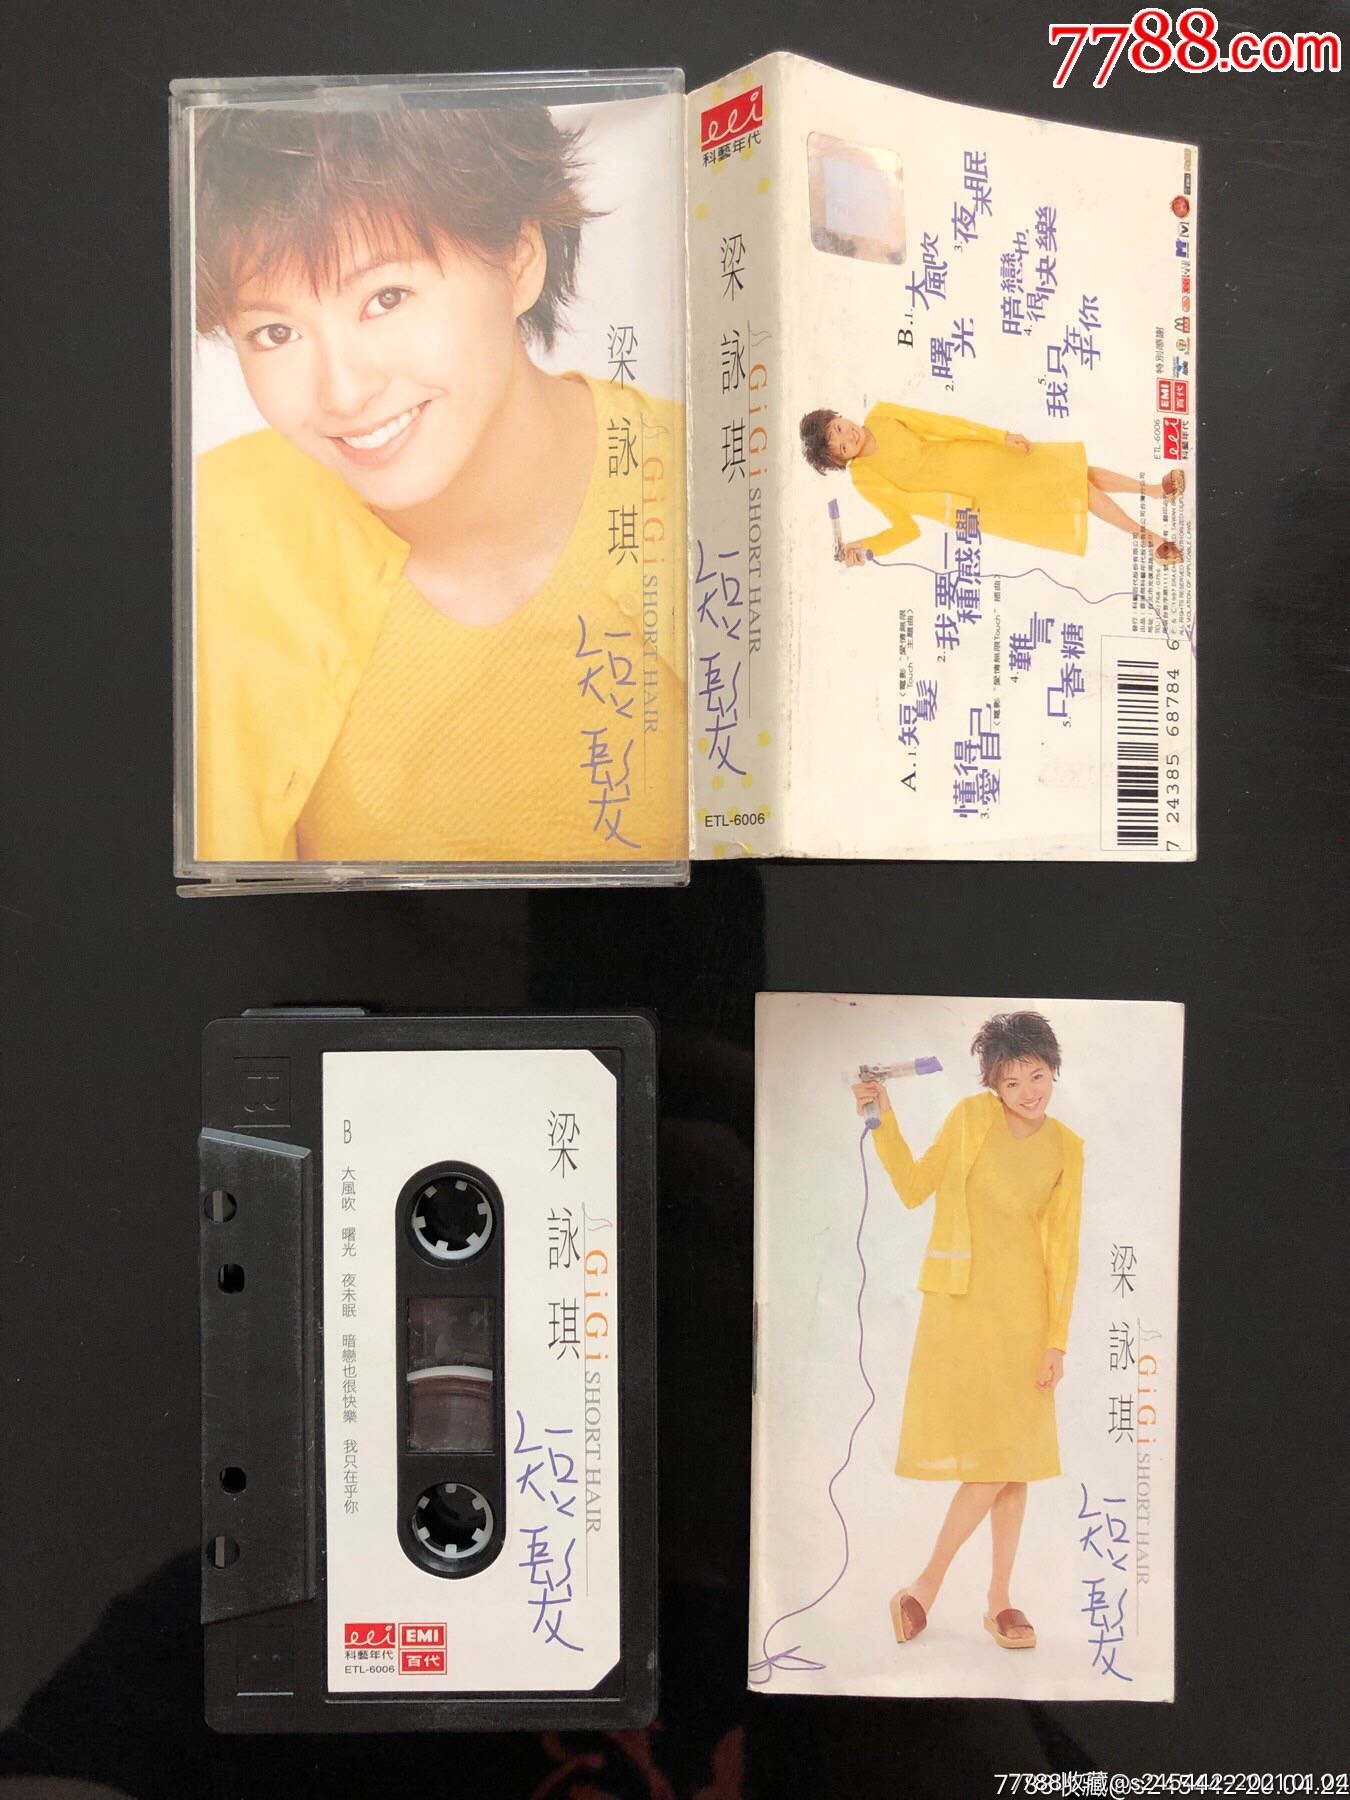 梁咏琪《短发》台湾年代唱片原版磁带